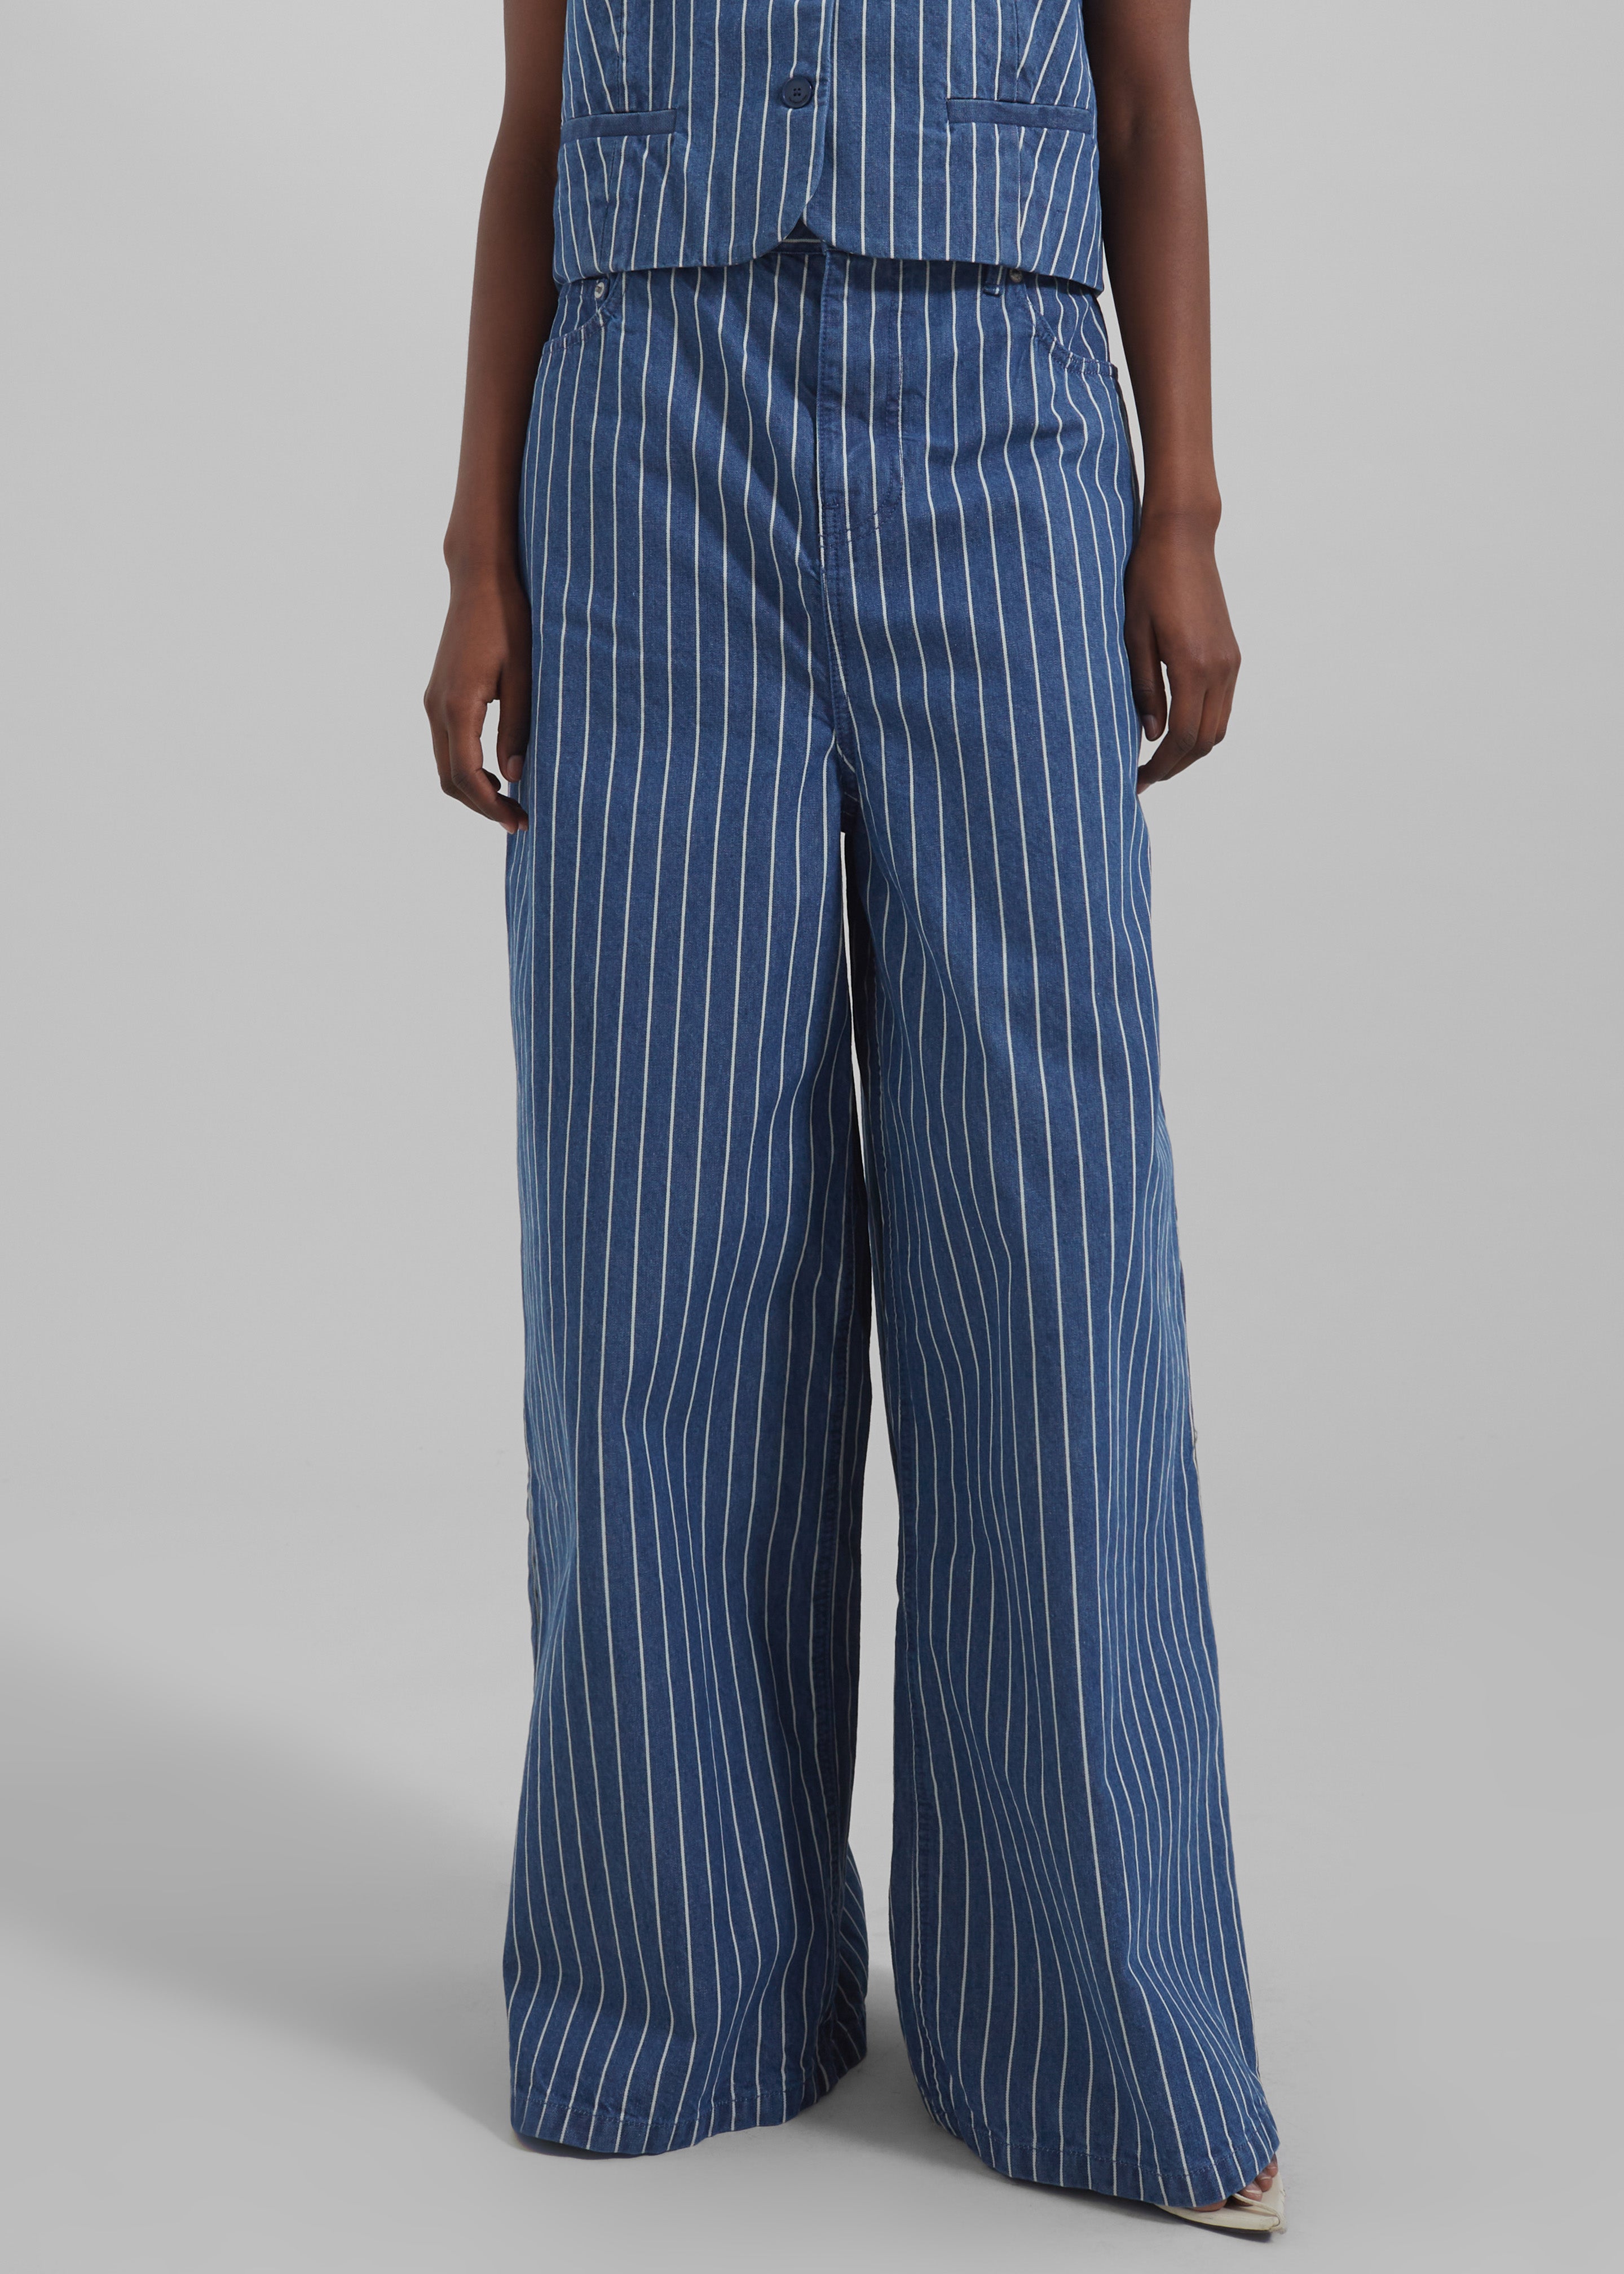 Sasha Wide Leg Jeans - Blue/White Stripe - 3